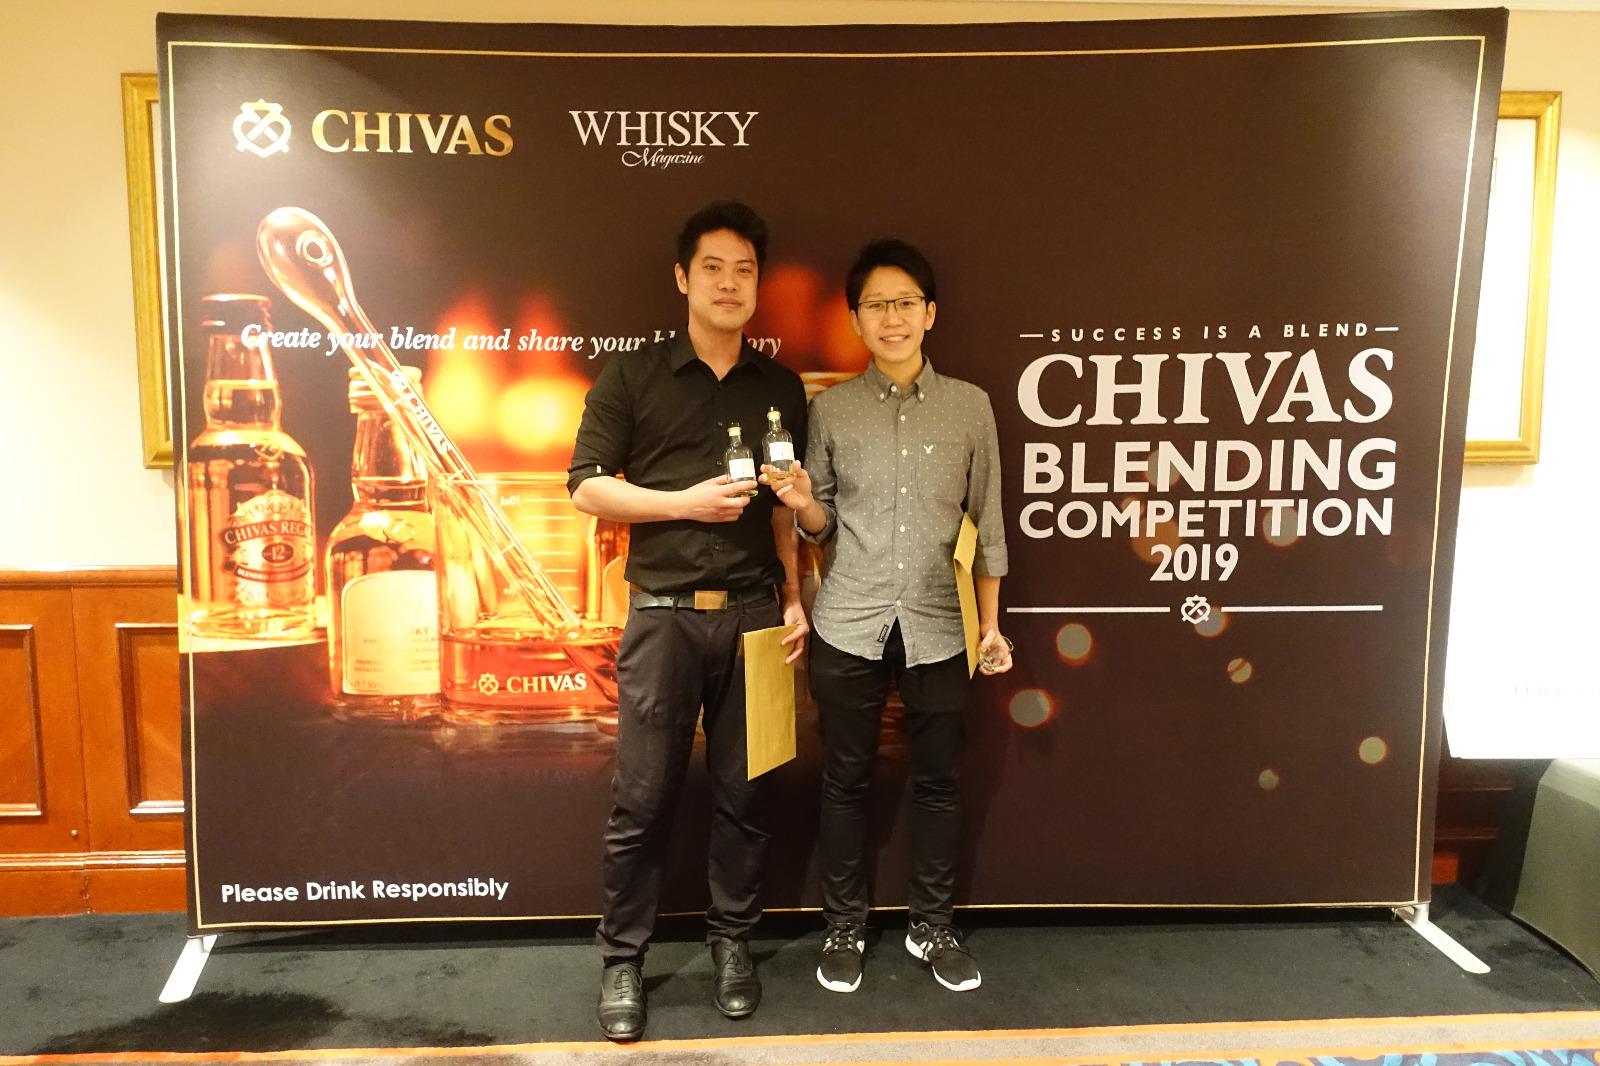 芝華士 (CHIVAS REGAL)首屆威士忌調和大賽 2019 完滿結束 - WineNow HK